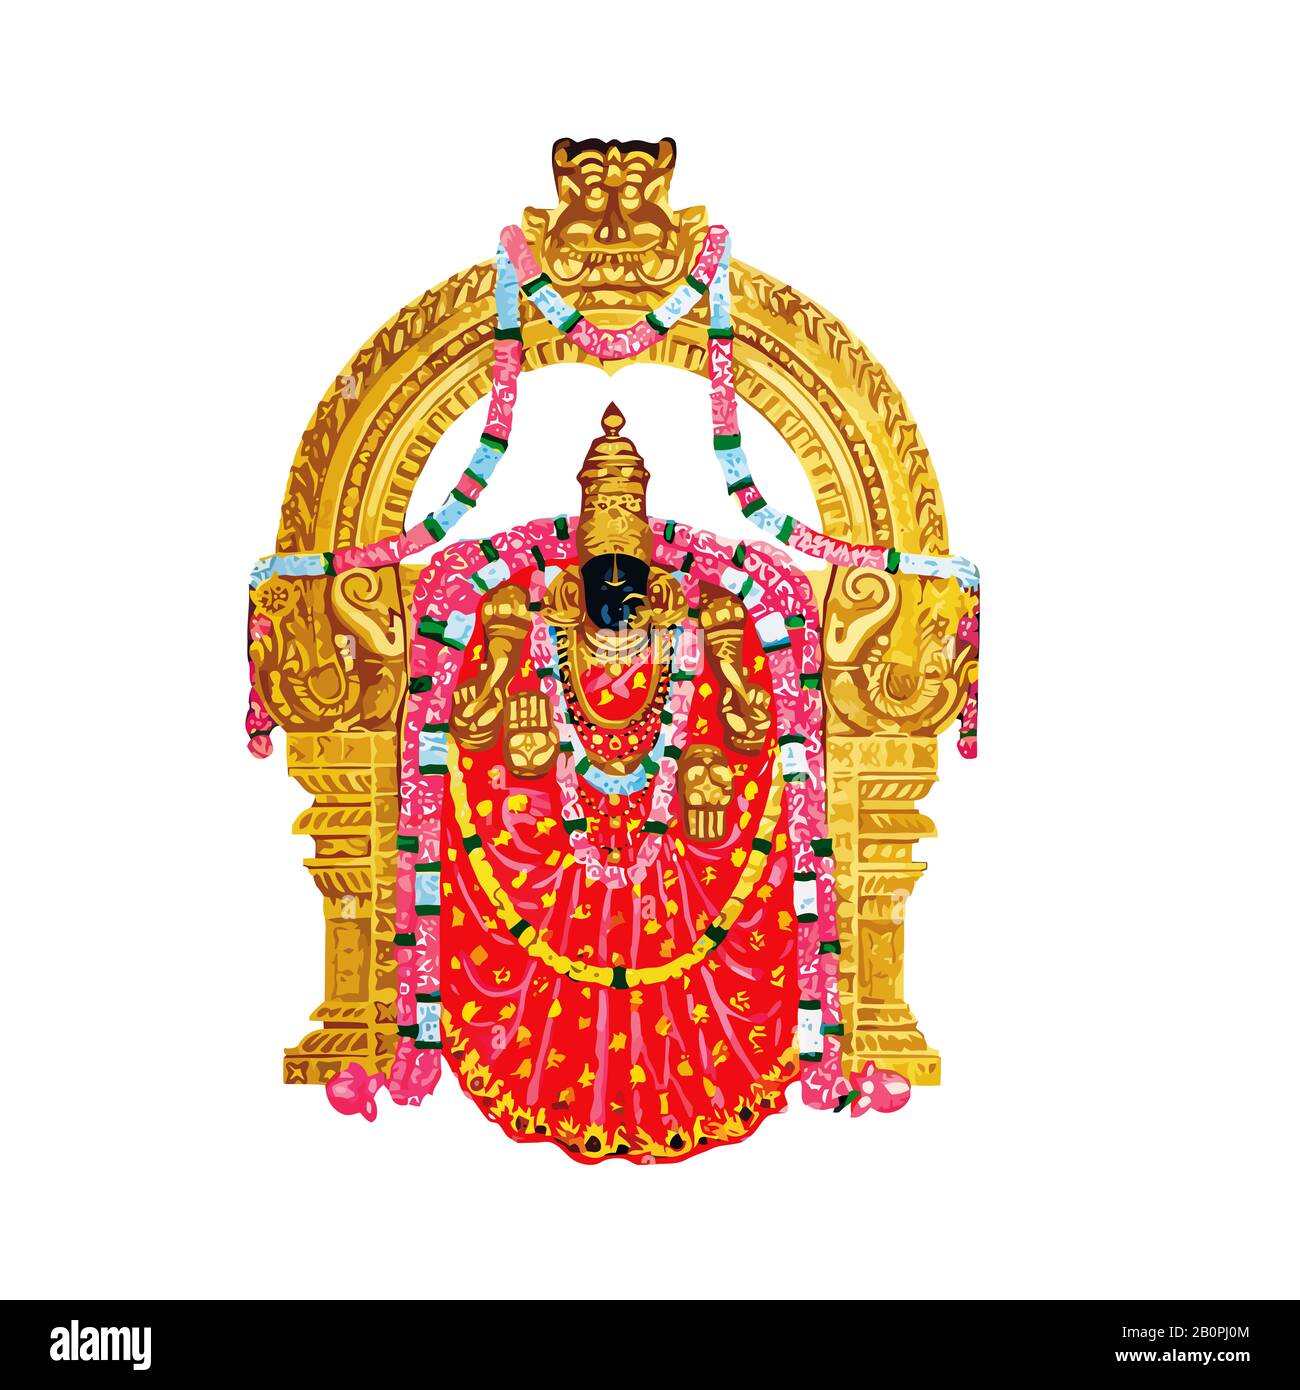 Lord Venkateswara on Pinterest